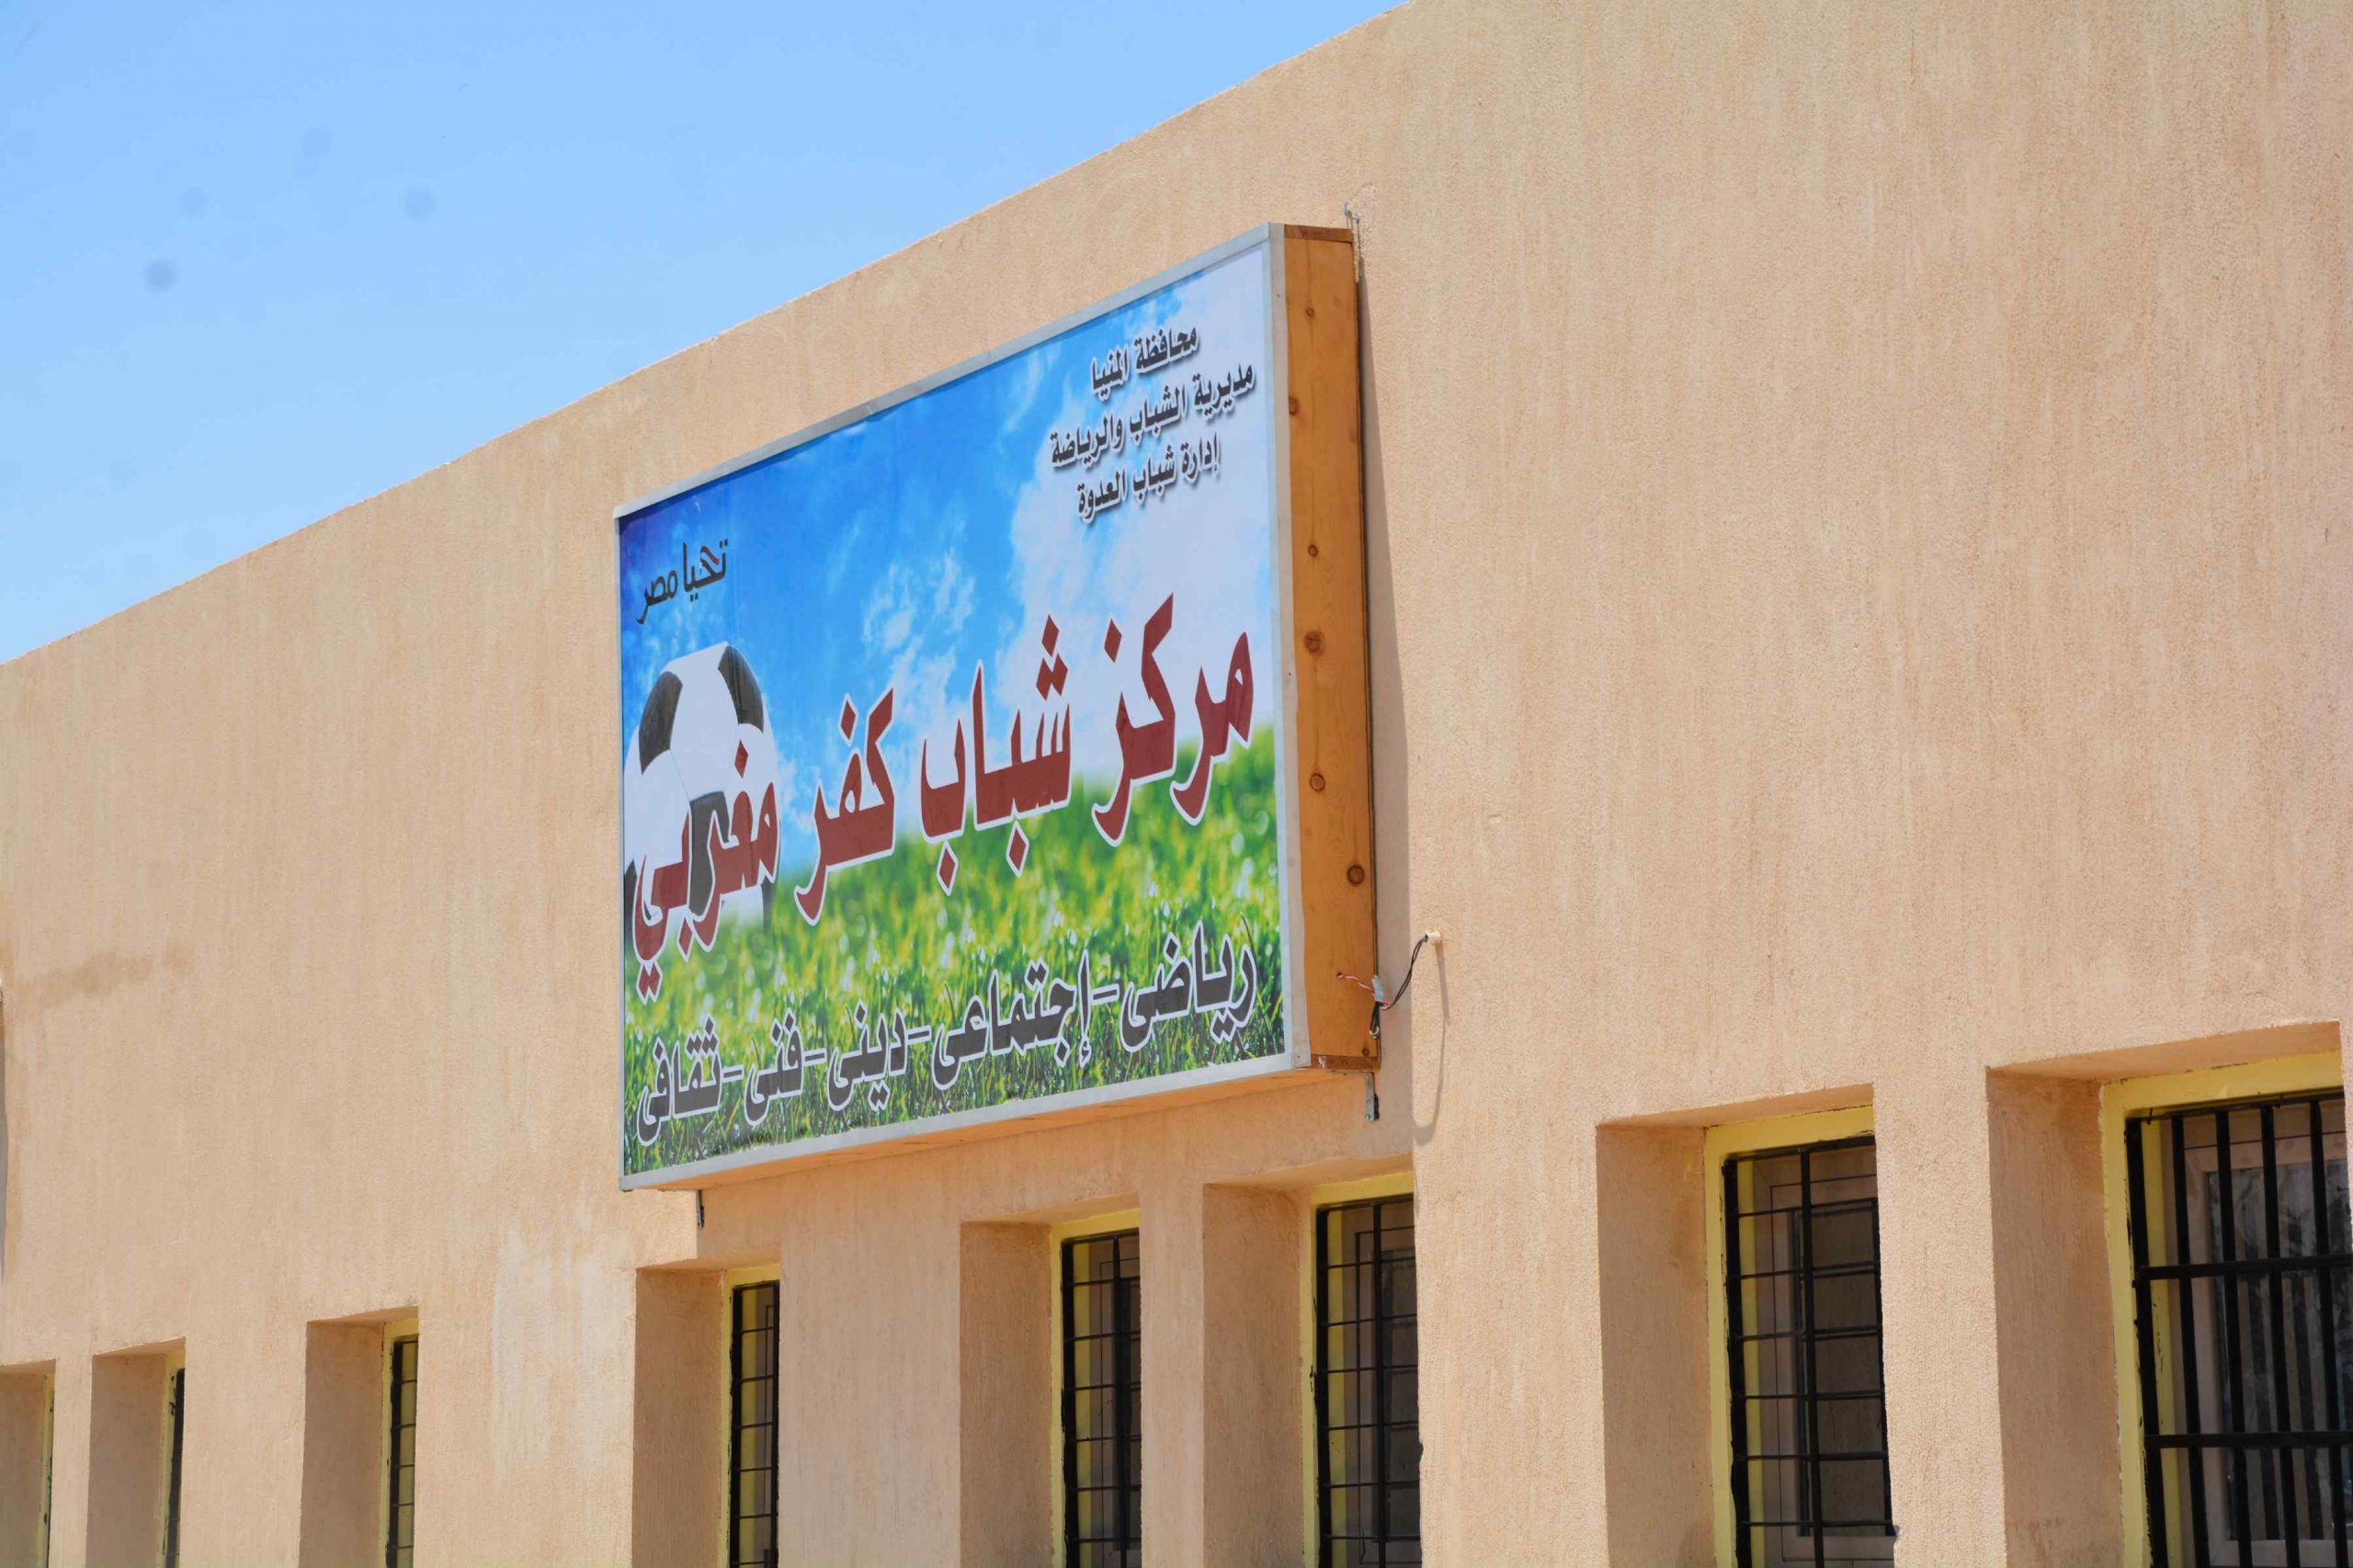   ضمن «حياة كريمة».. محافظ المنيا يتابع انهاء تنفيذ مركز شباب كفر المغربي بتكلفة 3 مليون جنيه